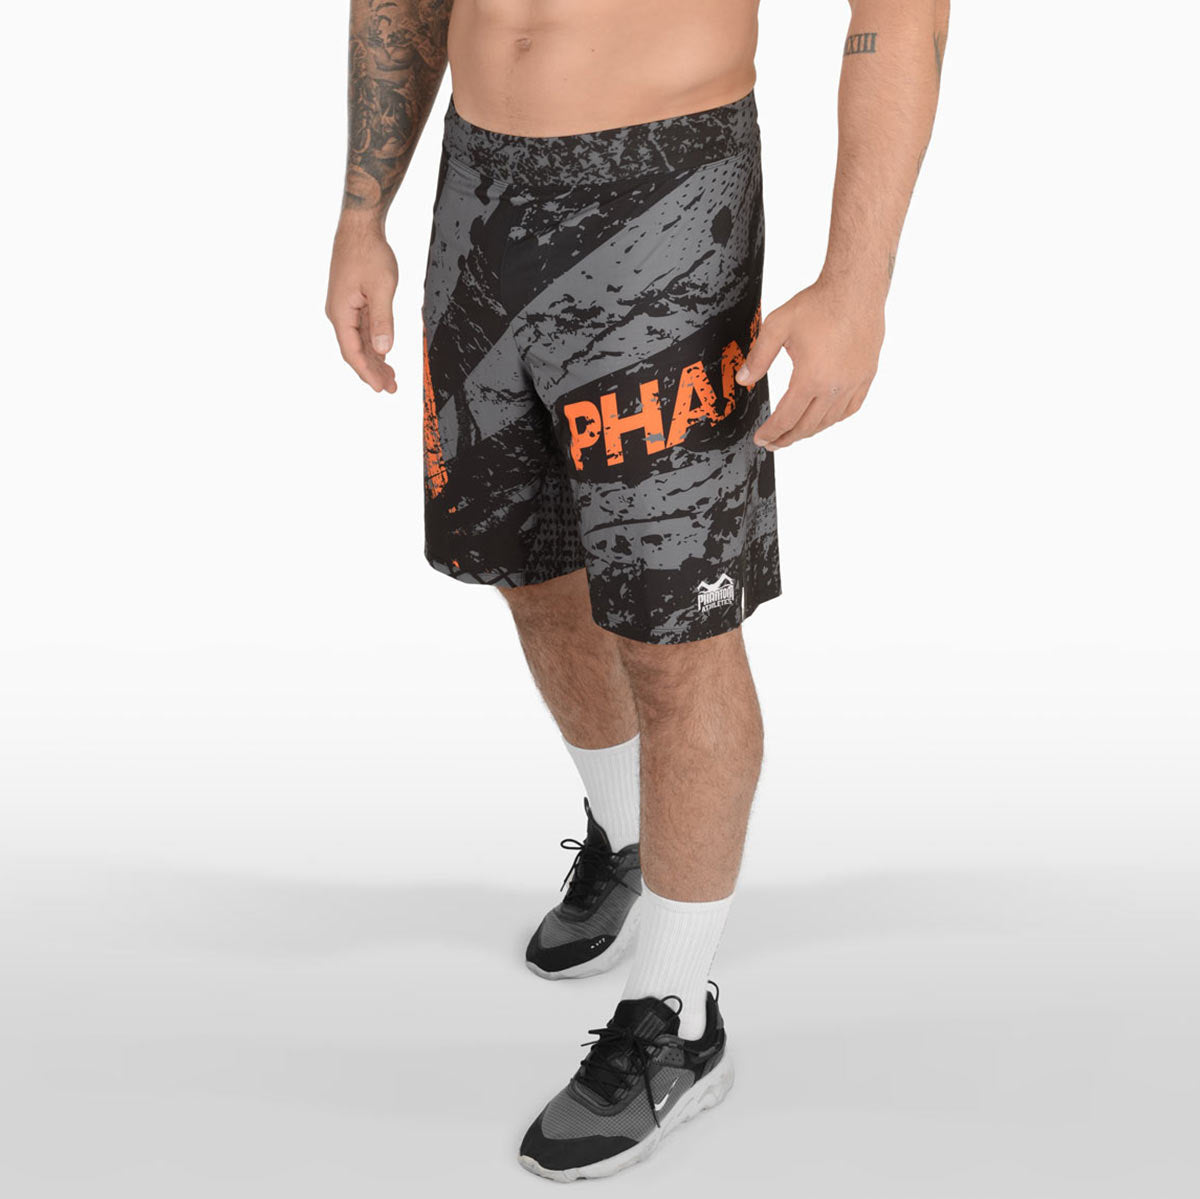 A Phantom FLEX harci rövidnadrágok a legjobb harci nadrágok közé tartoznak a piacon. Ultrakönnyű, rendkívül rugalmas és szakadásálló. Az abszolút minimumra csökkentve maximális teljesítményt nyújt a harcművészetekben. Nem számít, hogy BJJ, MMA, Muay Thai vagy kickbox. A Phantom Athletics FLEX rövidnadrágja a legjobbat hozza ki belőled. Itt a narancssárga fröccs dizájnban.